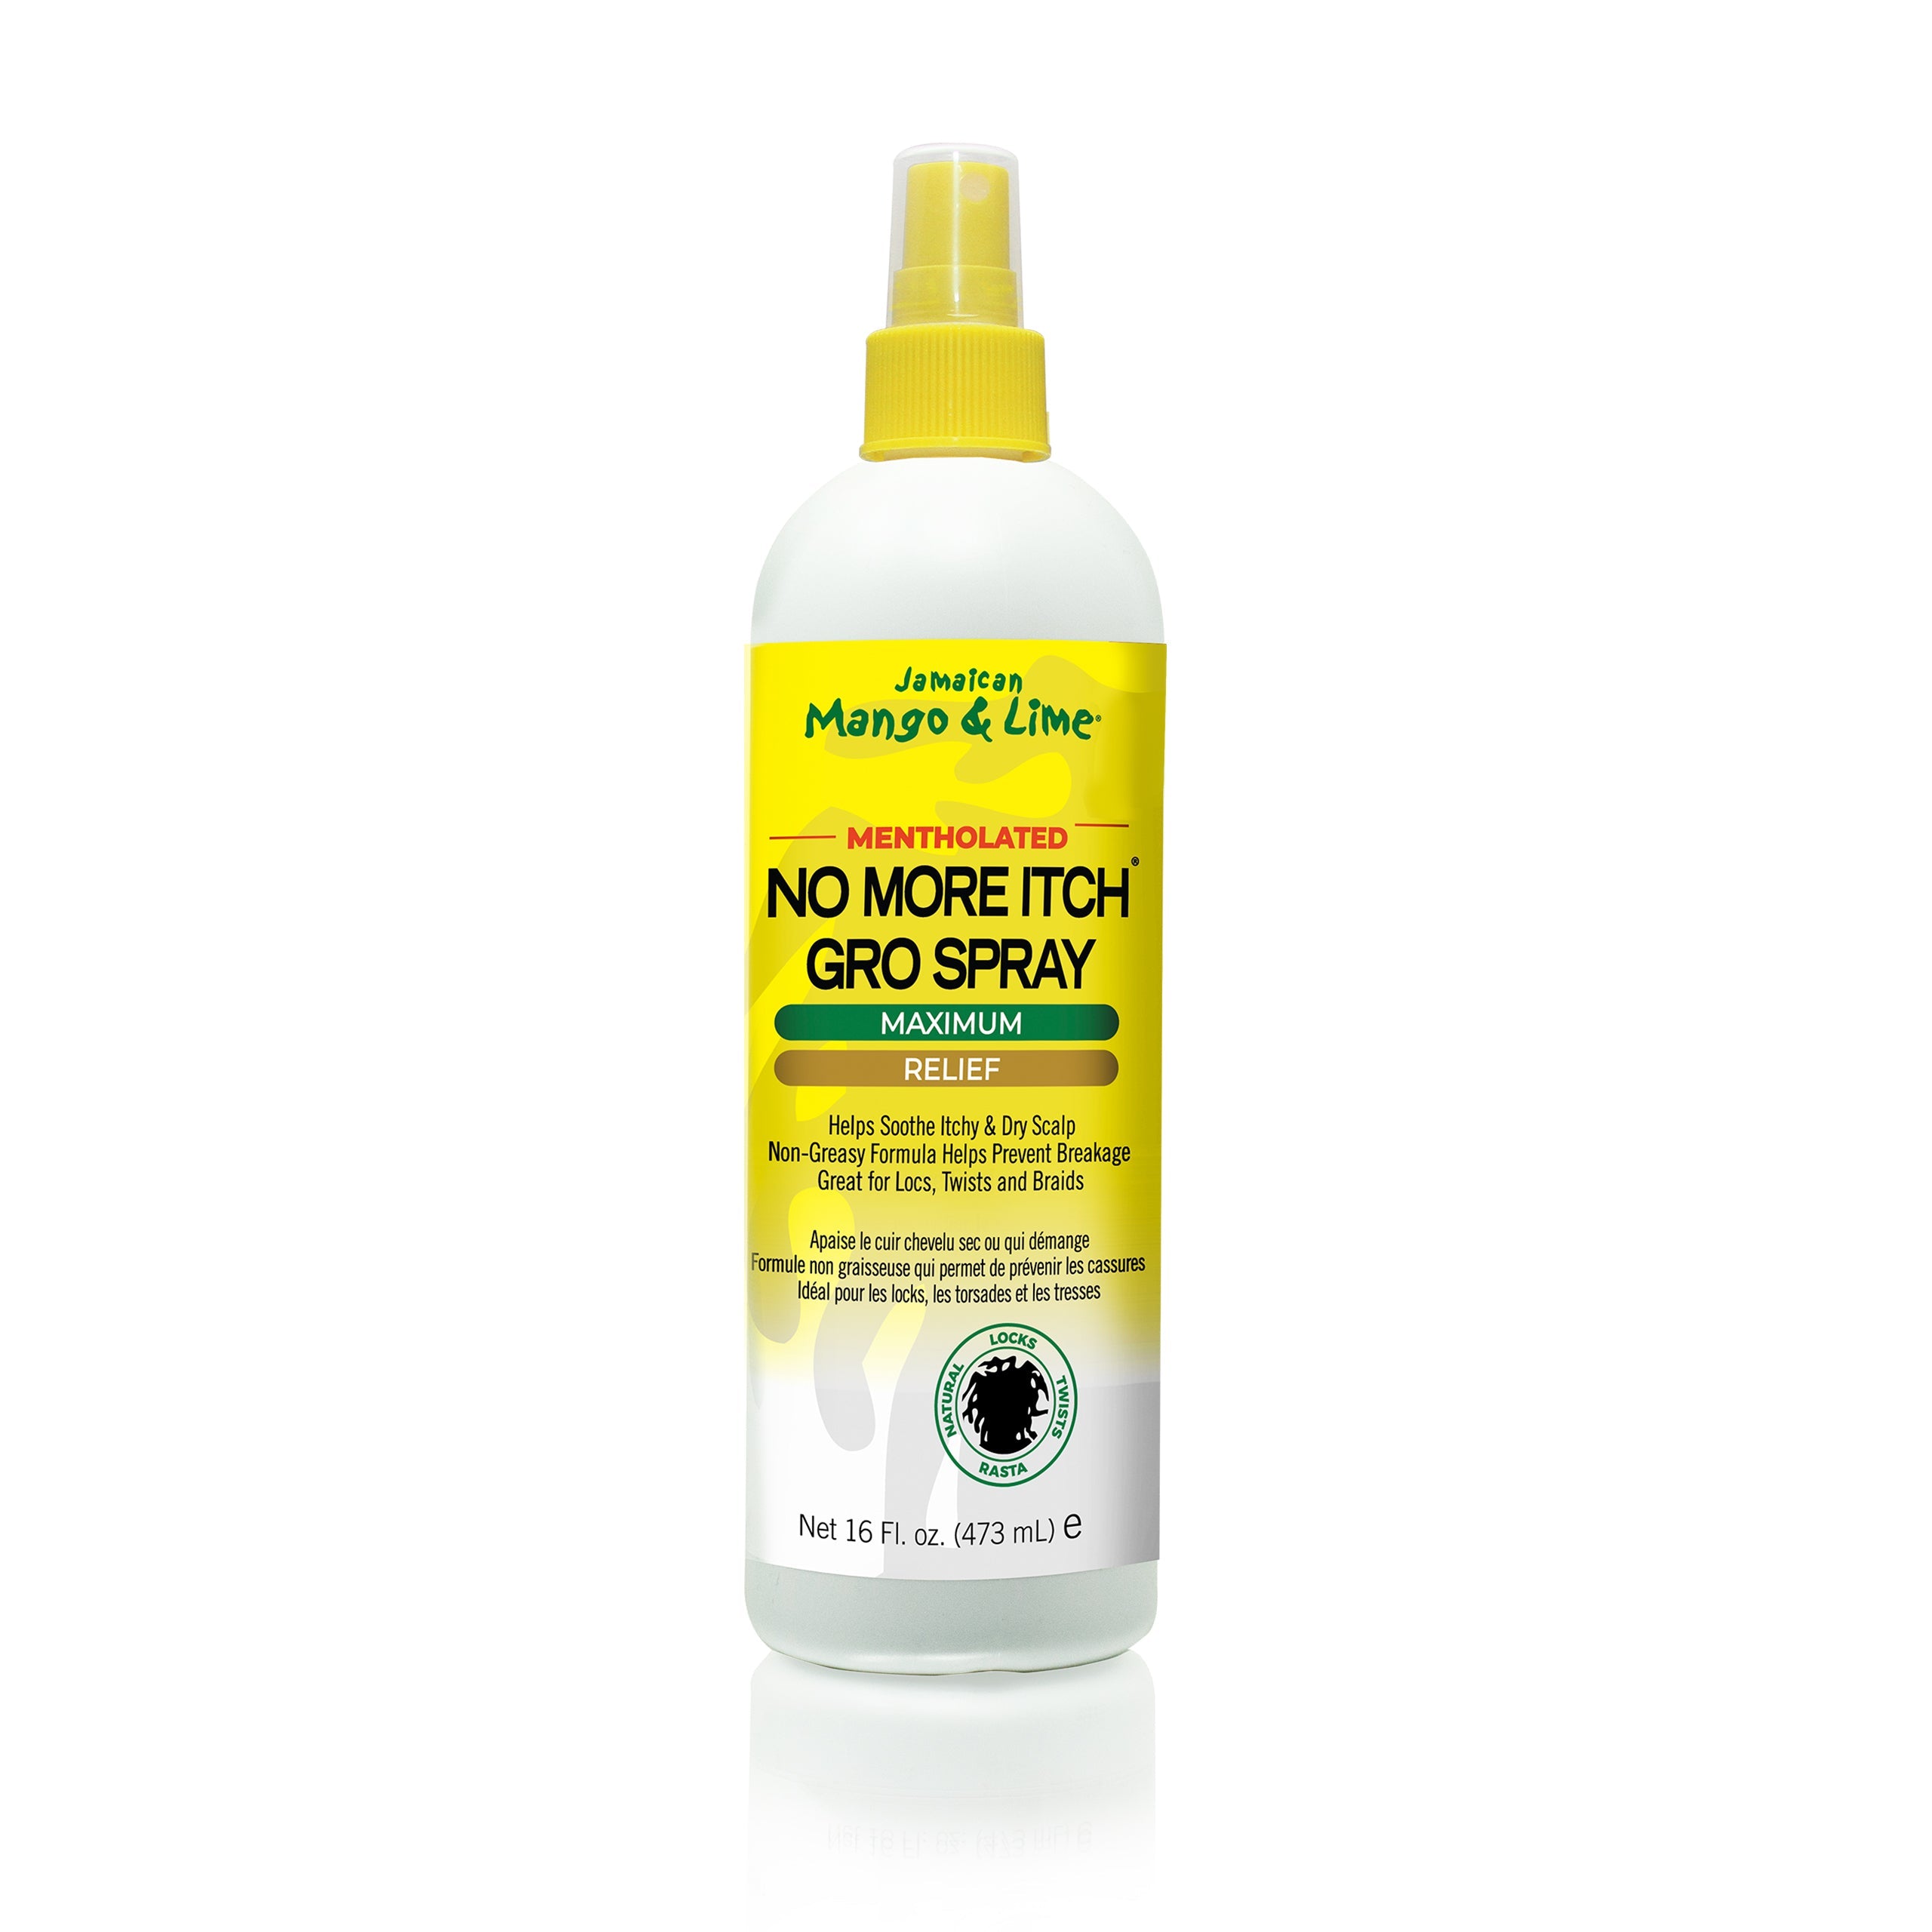 Jamaican Mango & Lime Mentholated No More Itch Gro Spray 8oz